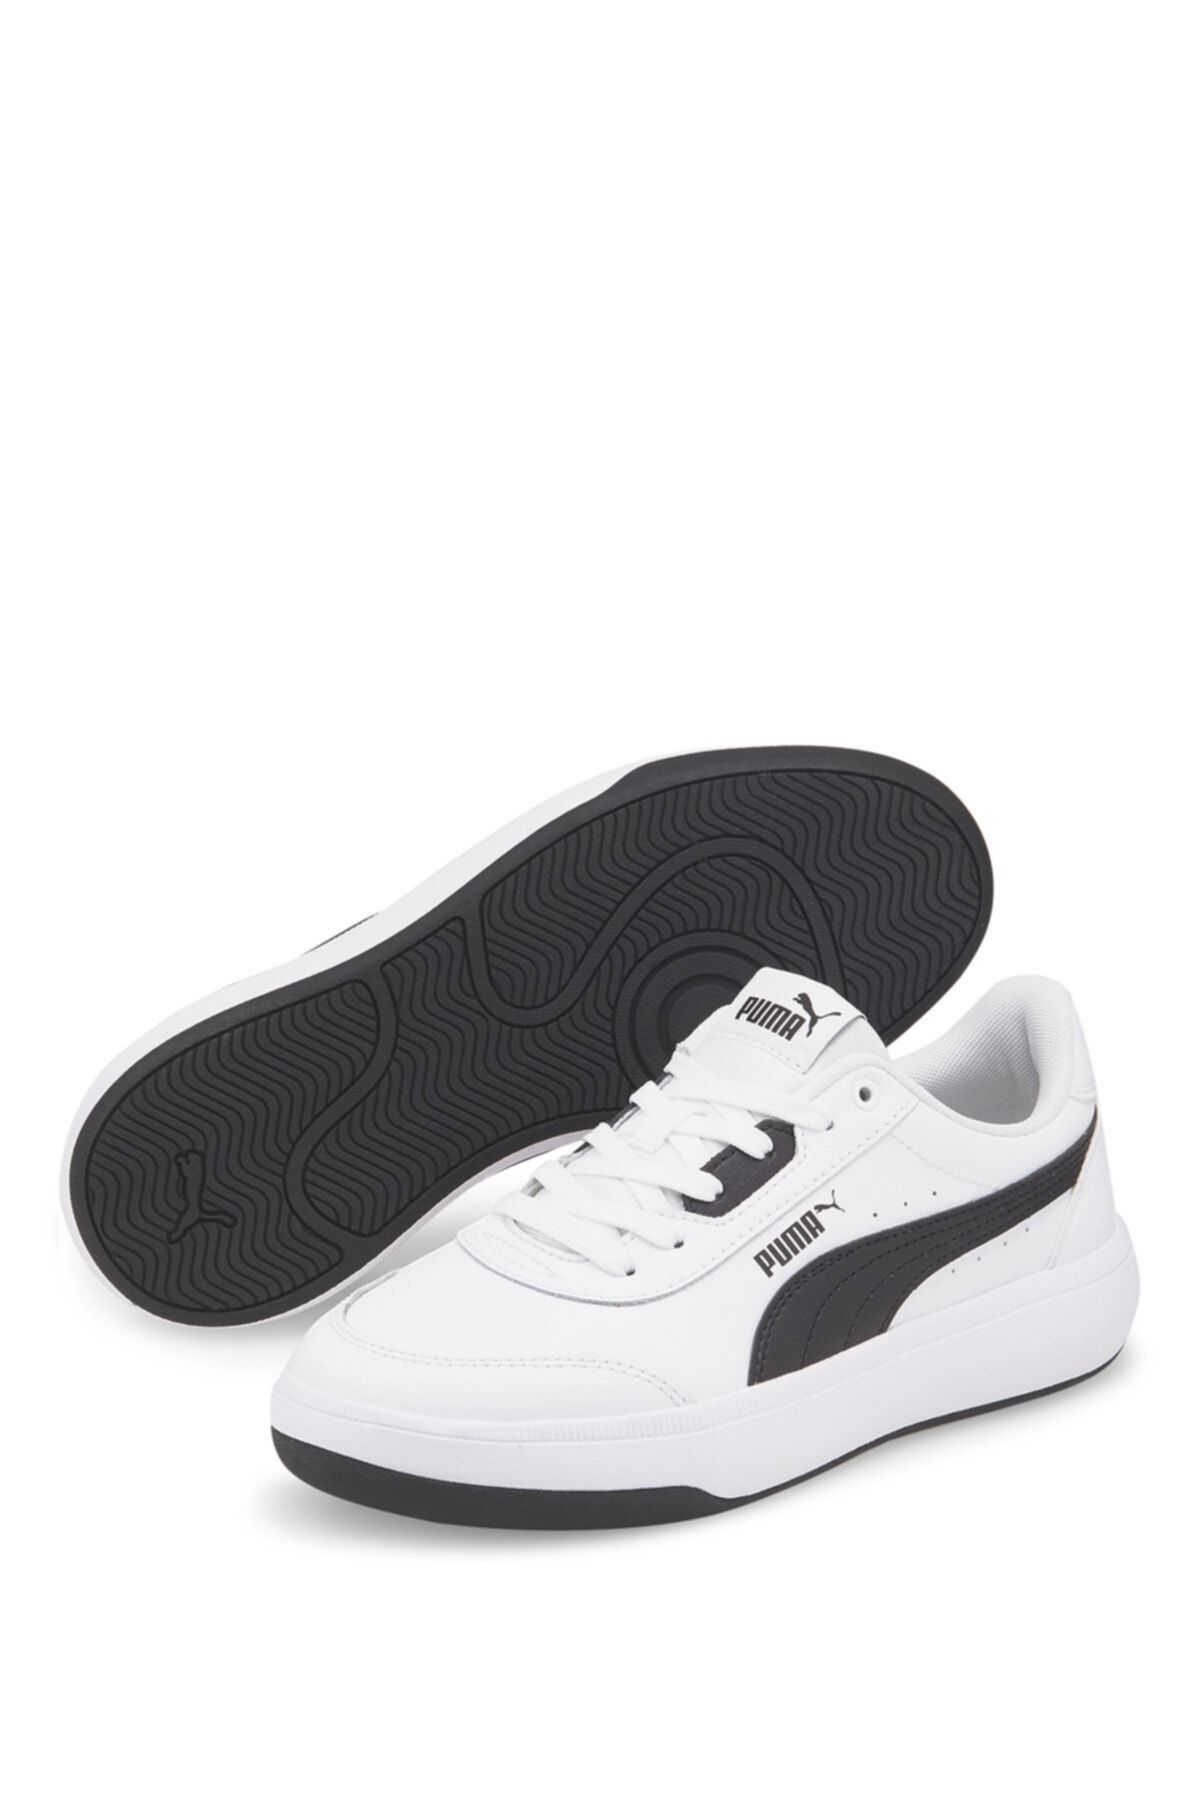 Puma Torı Whıte- Blac Beyaz Kadın Sneaker